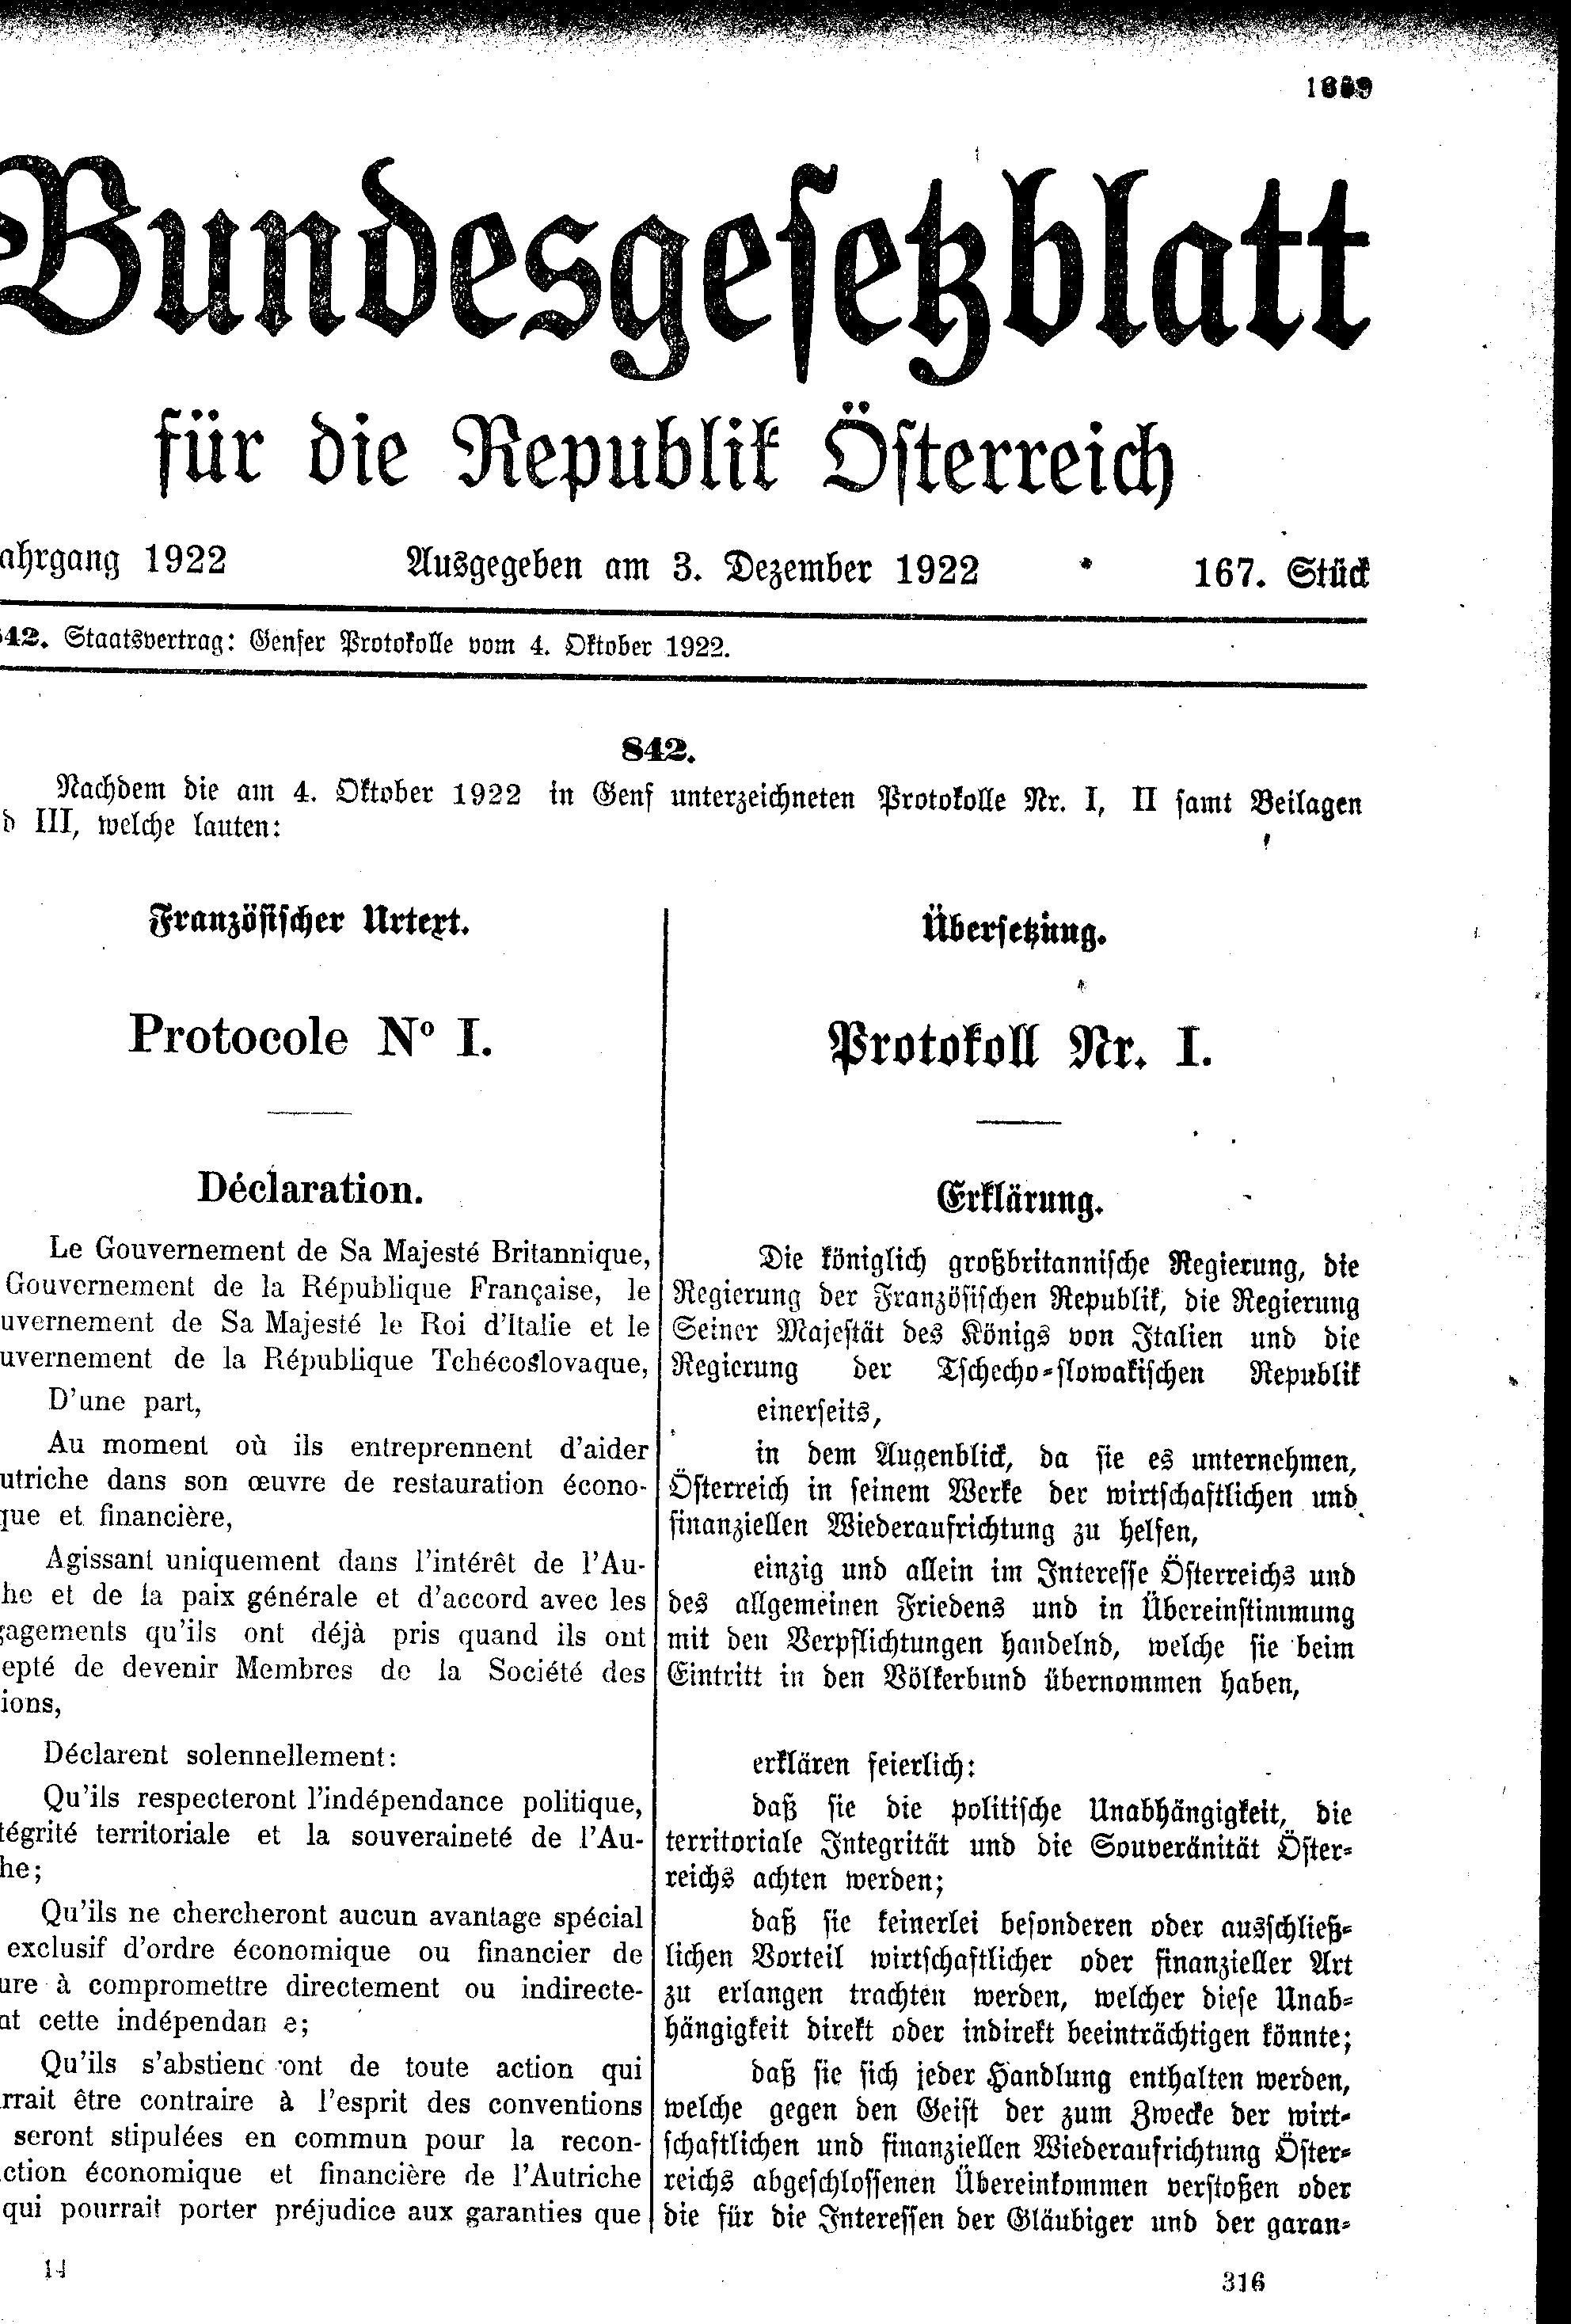 Bildquelle: Bundesgesetzblatt für die Republik Österreich, 1922, ALEX/ÖNB.